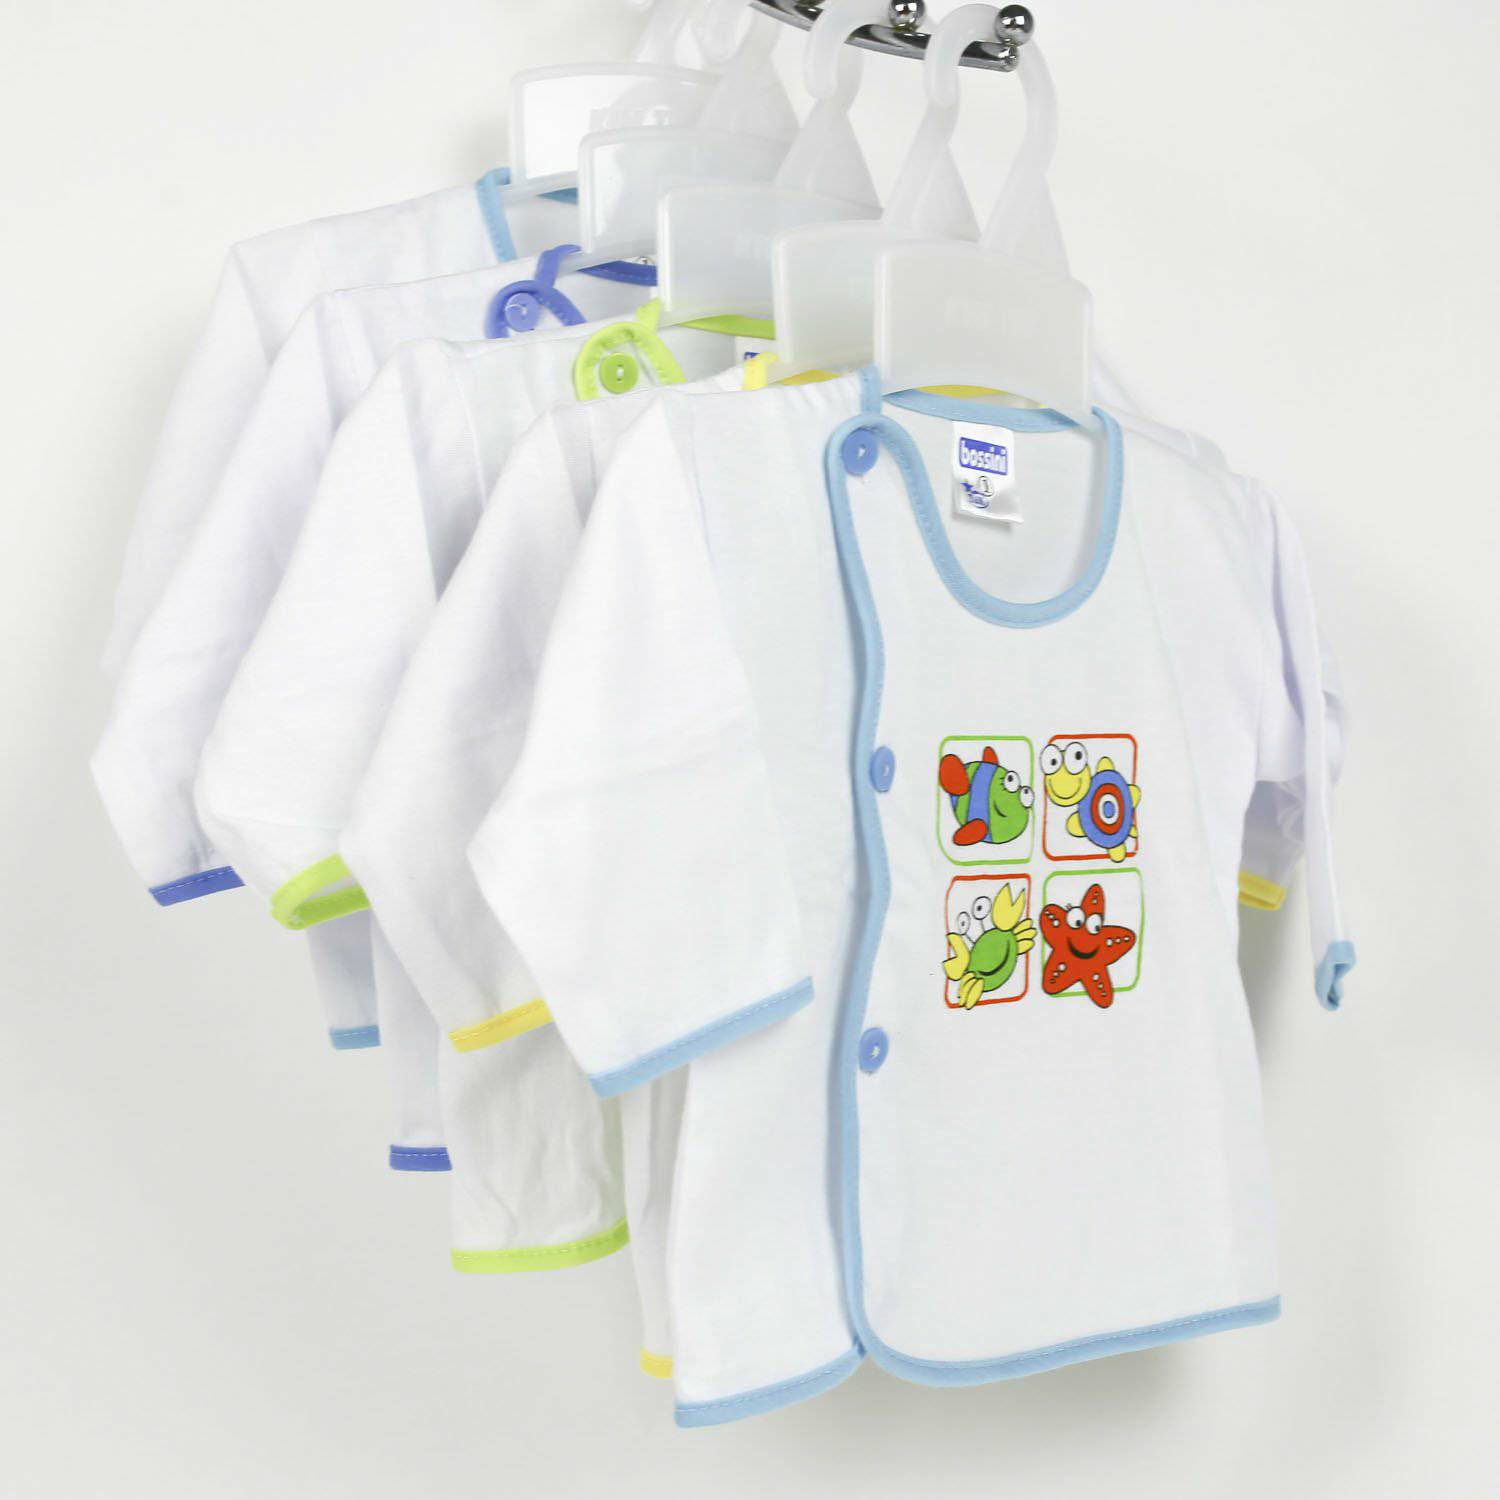 Bộ 5 áo sơ sinh dài tay Bosini màu trắng cúc lệch cho bé từ 0-12 tháng